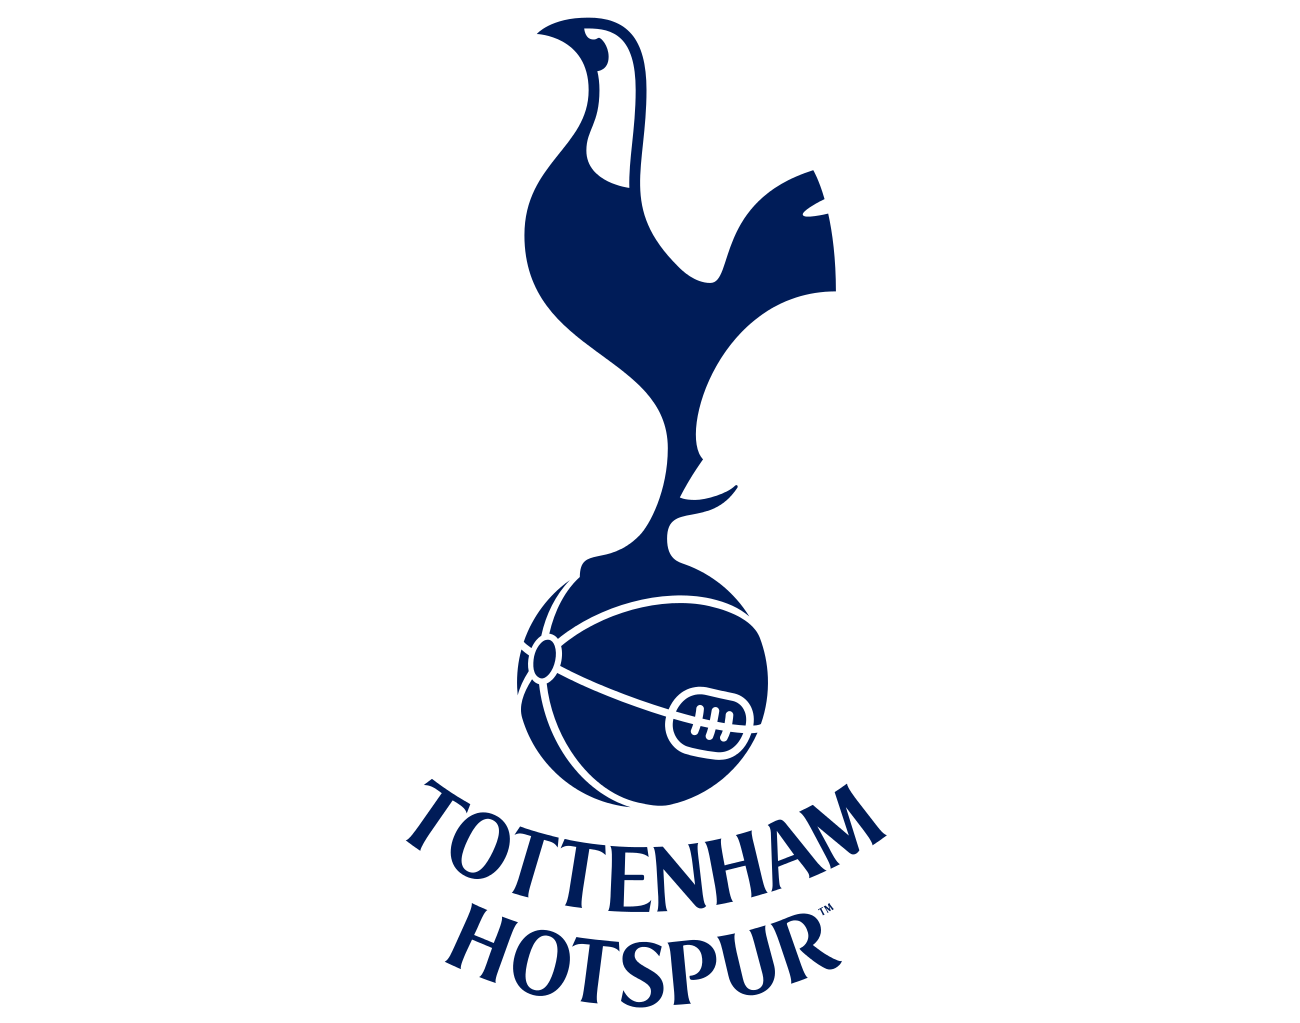 Tottenham Hotspur Ltd